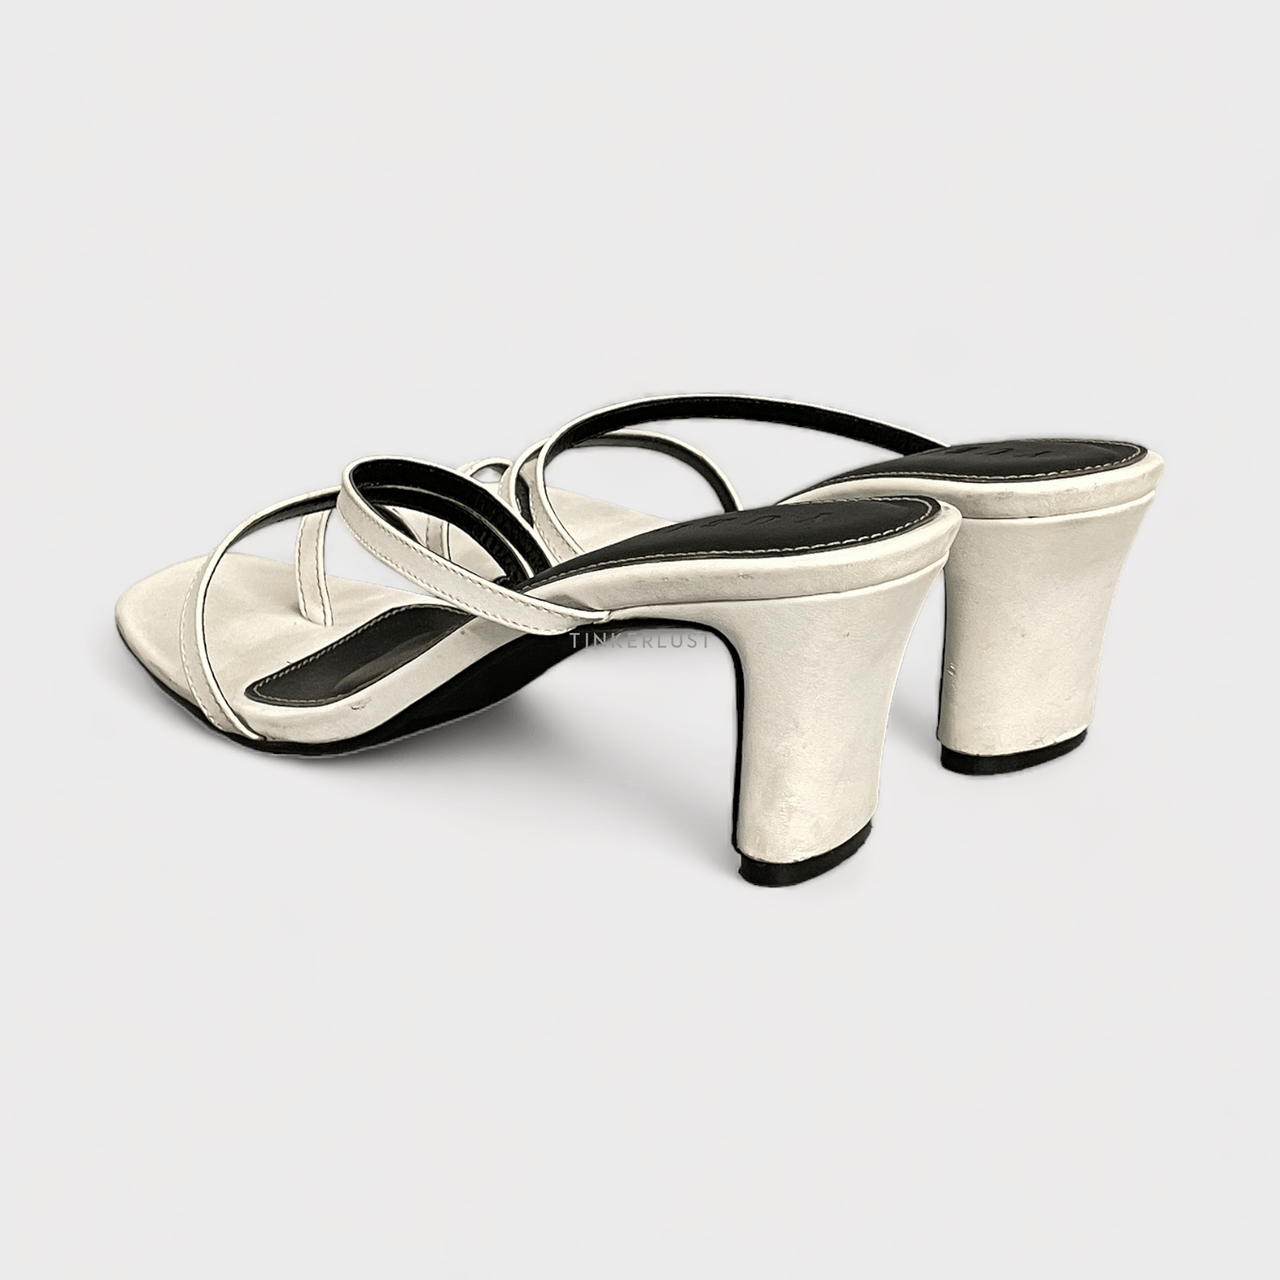 yubi- White Heels